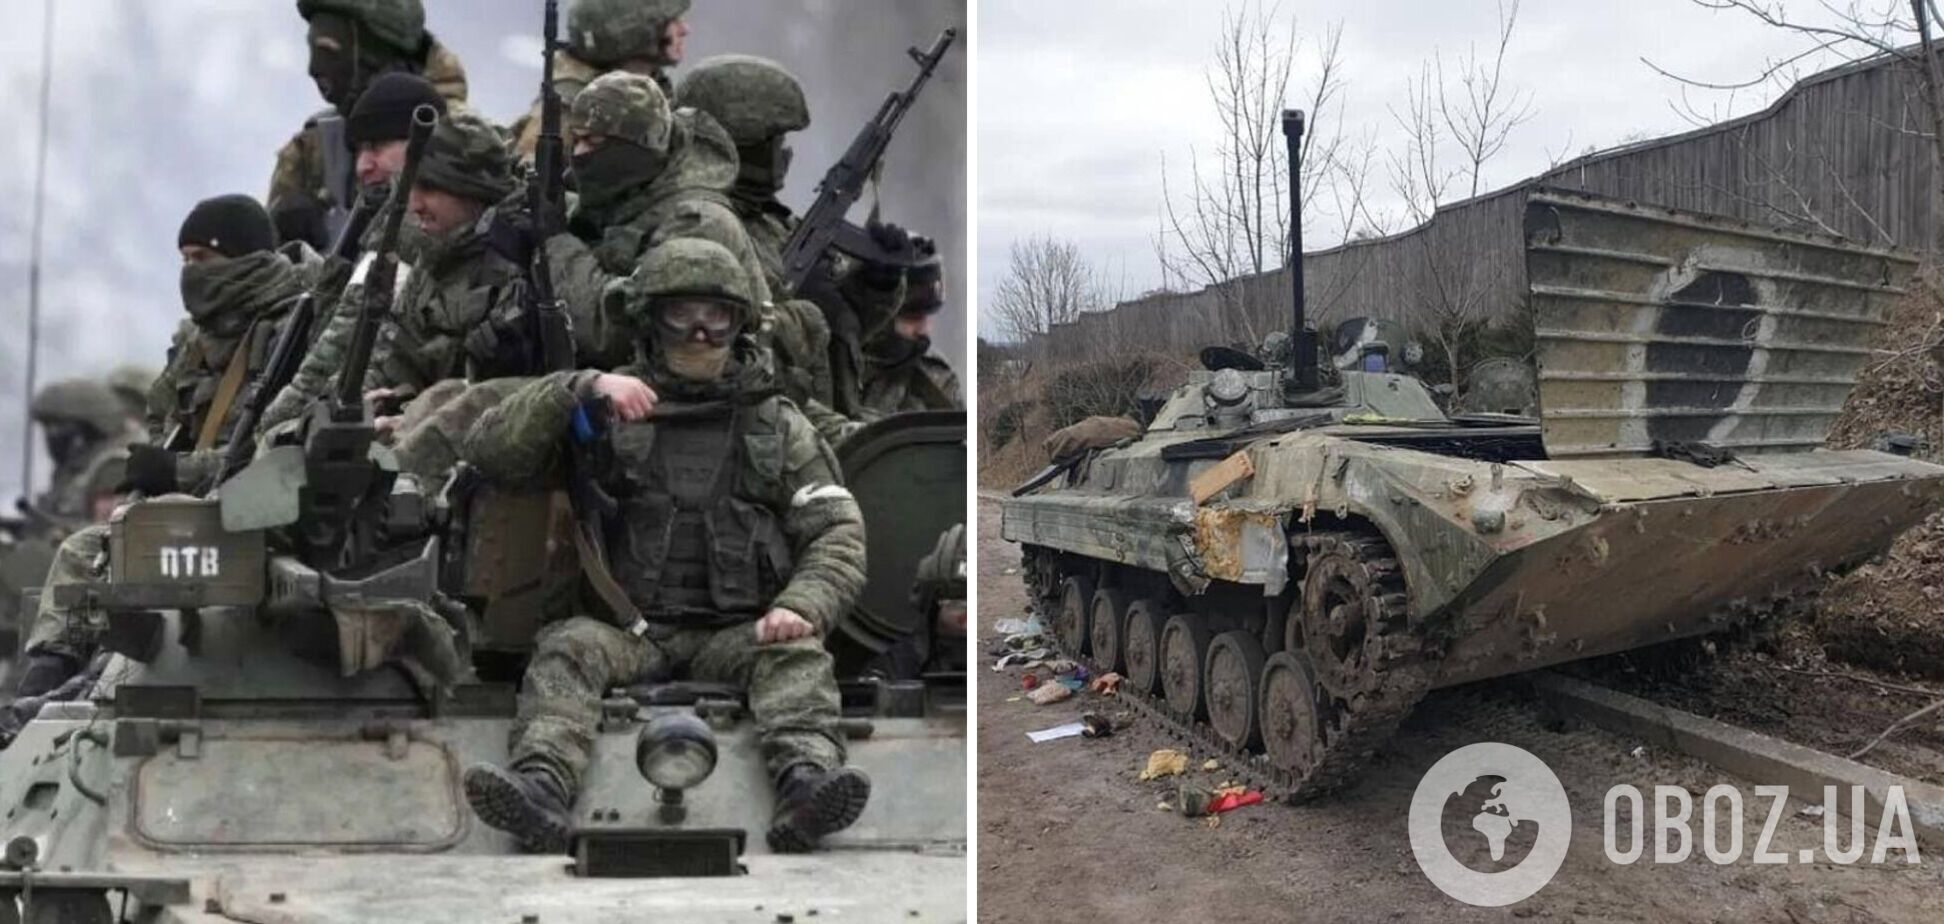 'Решили прорваться по болоту, 60 танков потопили': оккупант в разговоре с матерью рассказал о потерях в Украине. Аудио